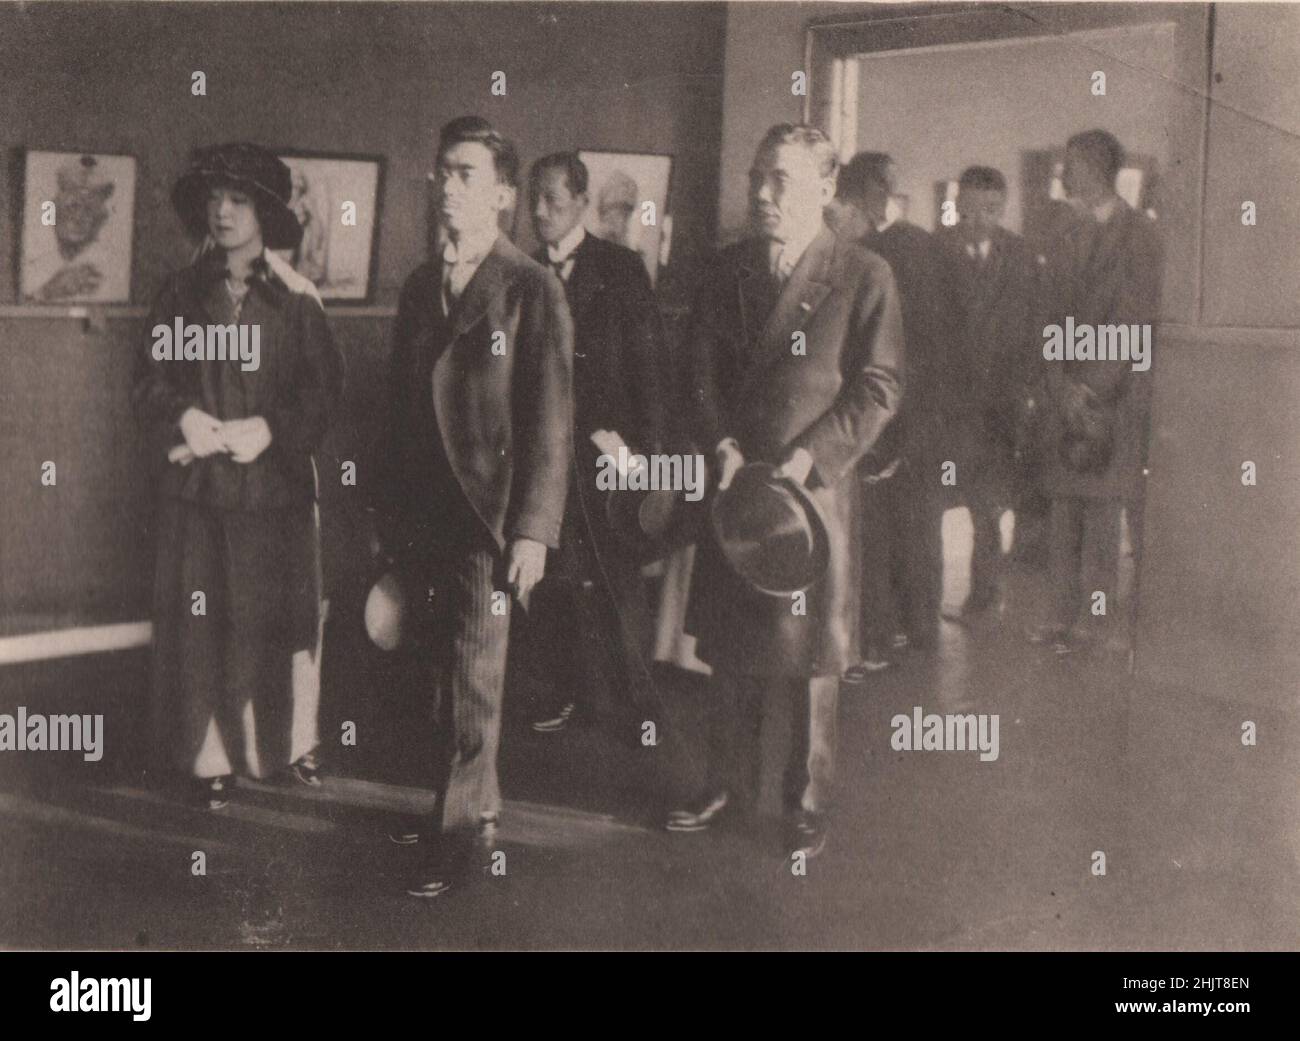 Giappone terremoto 1923: Il Principe della Corona e la Principessa in visita al Salone d'Arte Belga Foto Stock